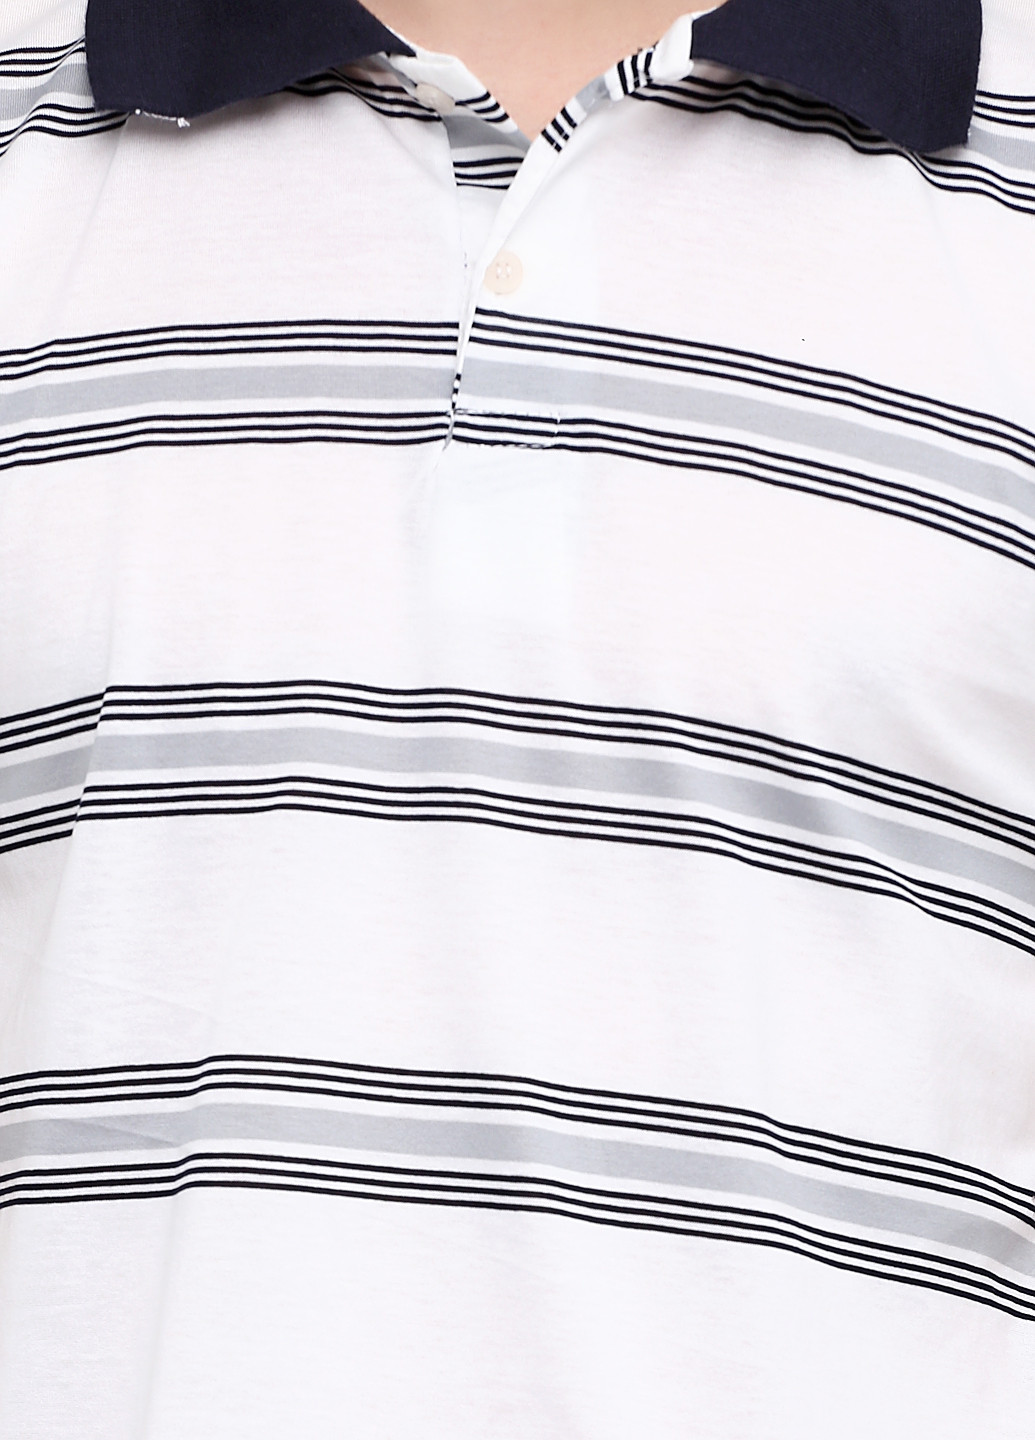 Белая футболка-поло для мужчин Chiarotex в полоску